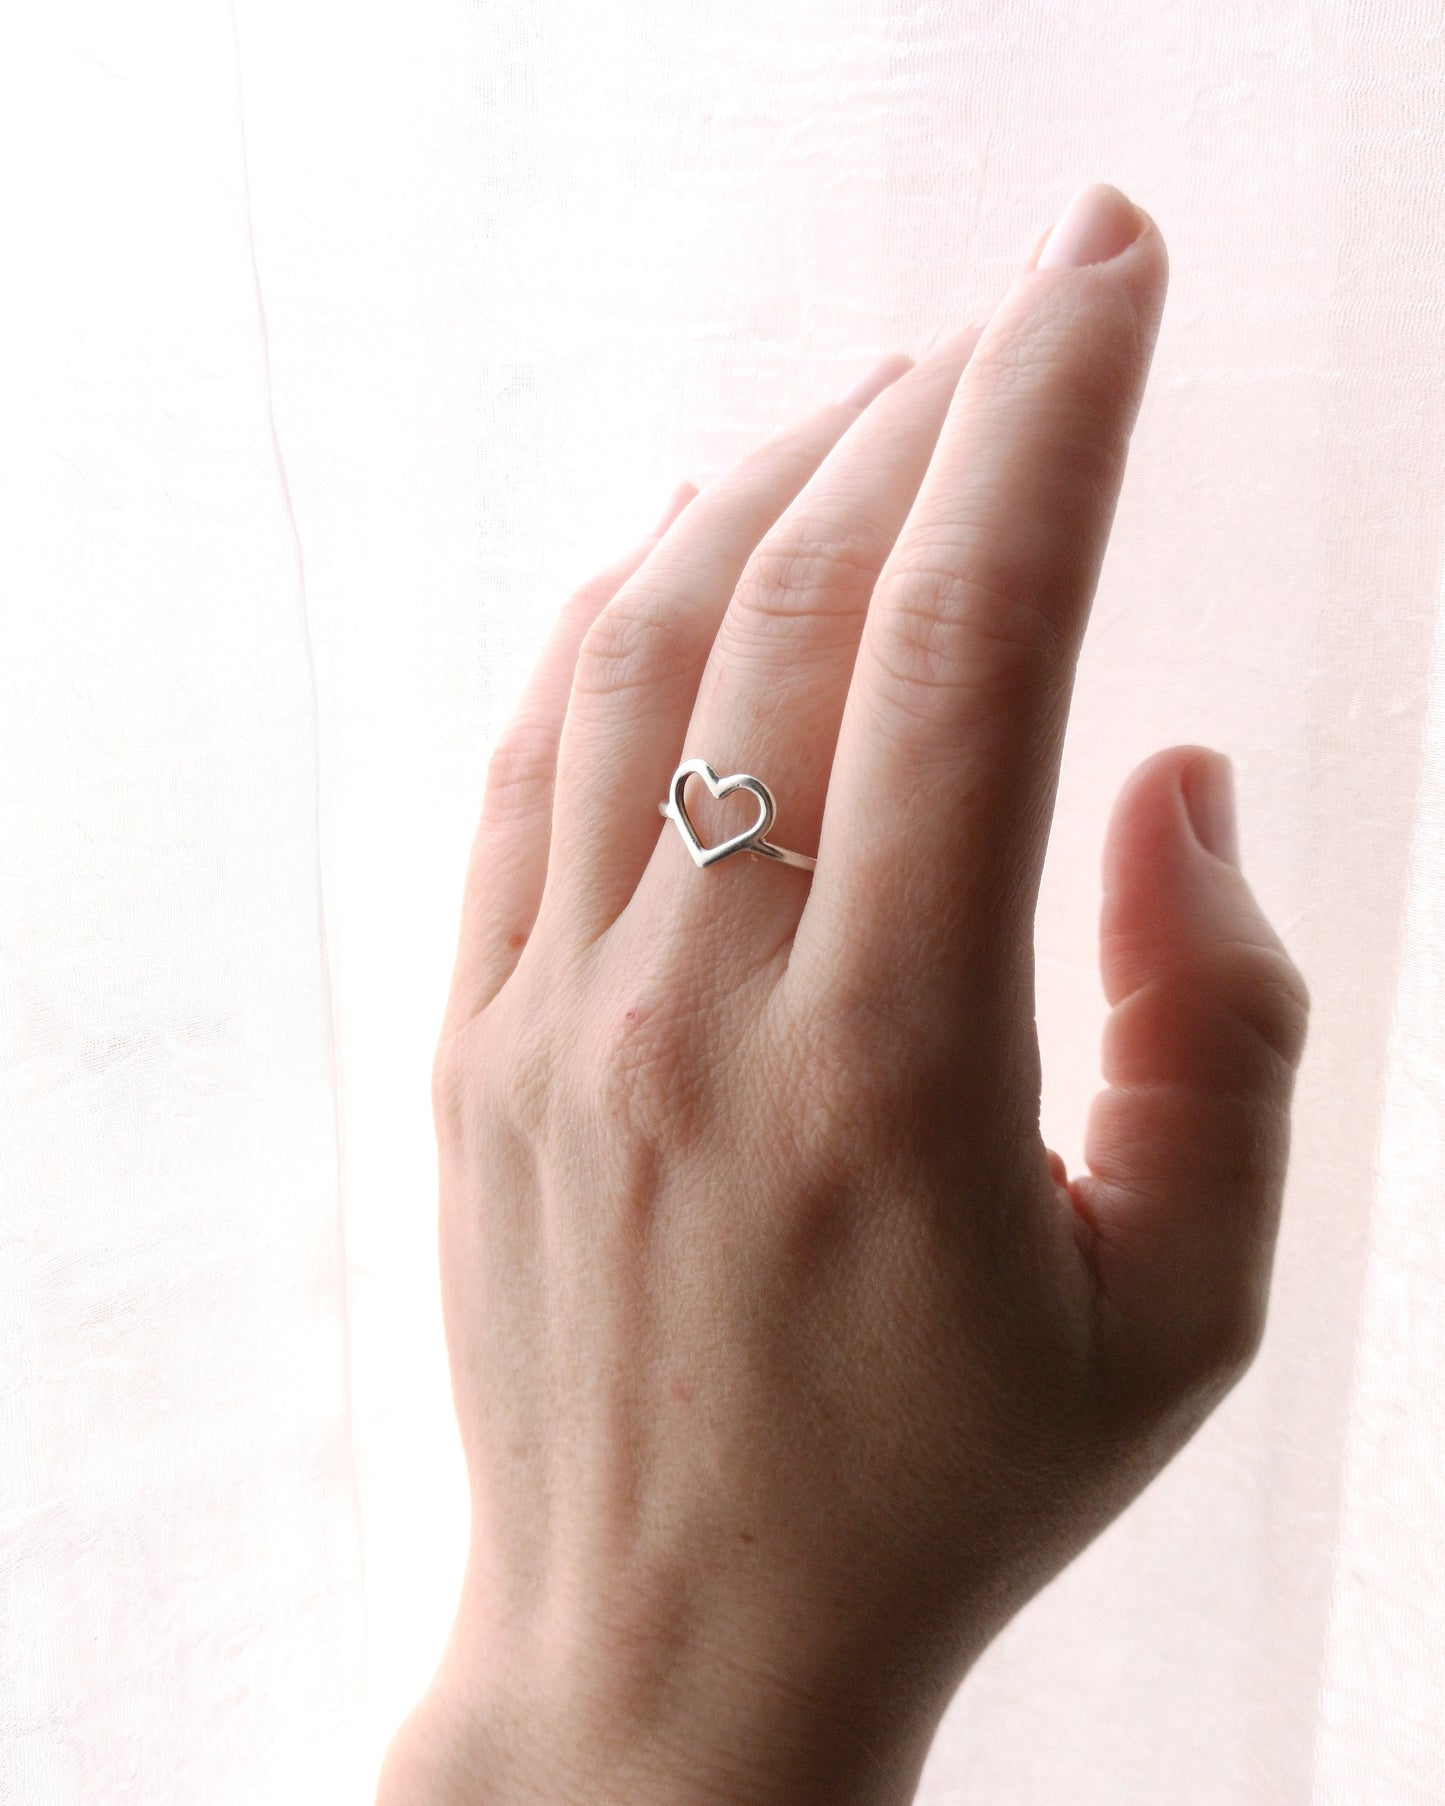 Imagen en primer plano de mano en medio perfil con anillo CORAZÓN en dedo medio. Fondo blanco.